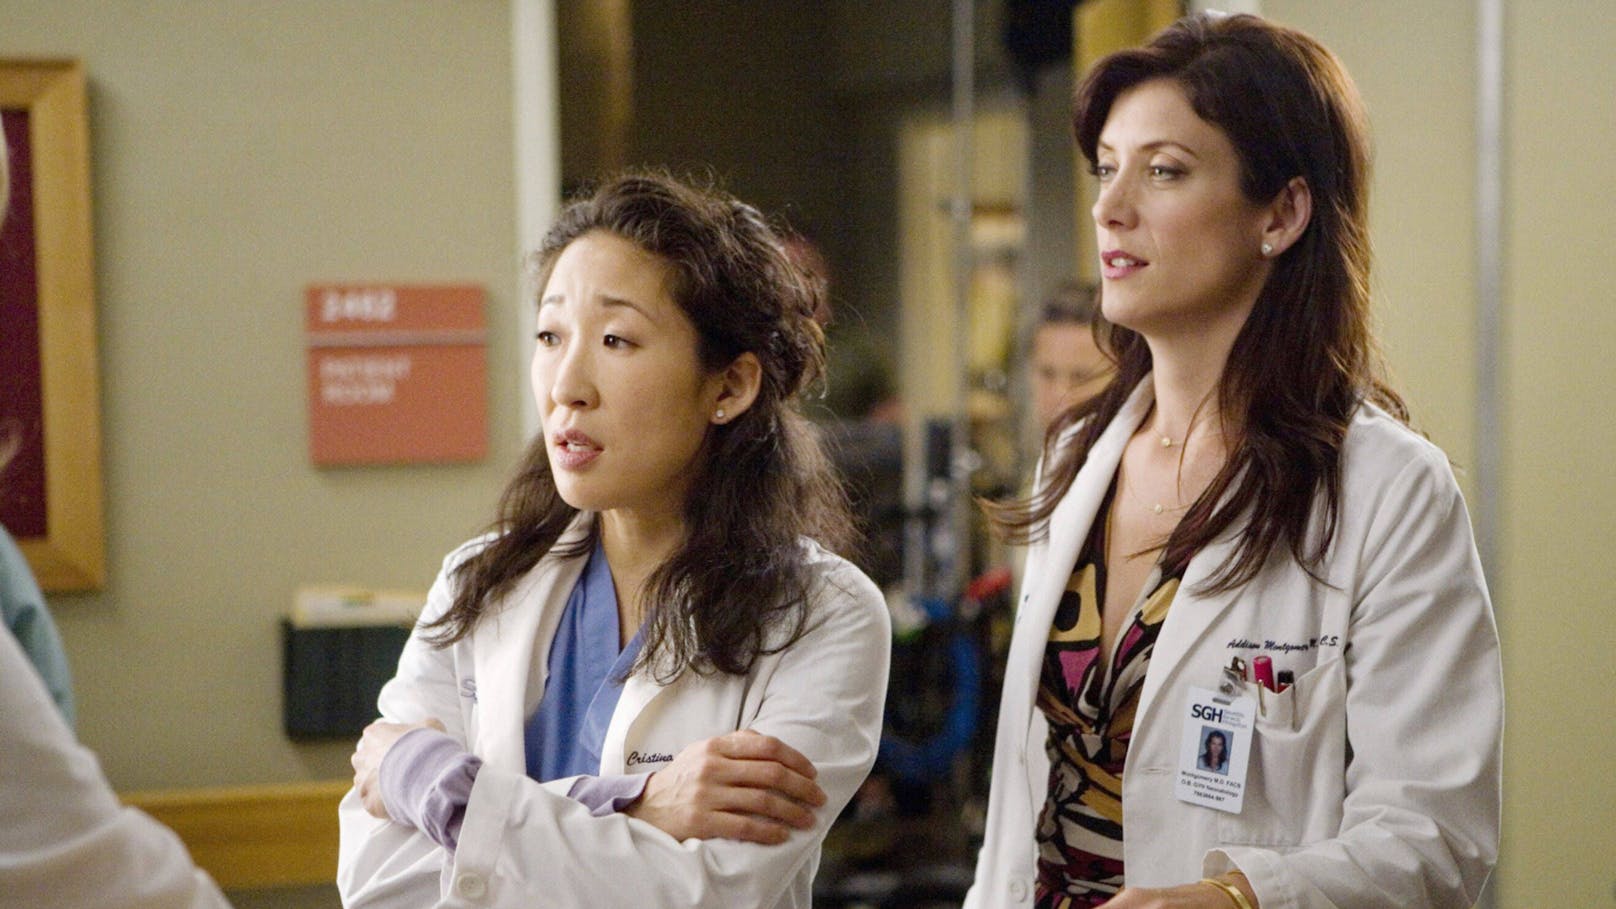 Das waren noch Zeiten: Sandra Oh und Kate Walsh in der vierten Staffel "Grey's Anatomy".